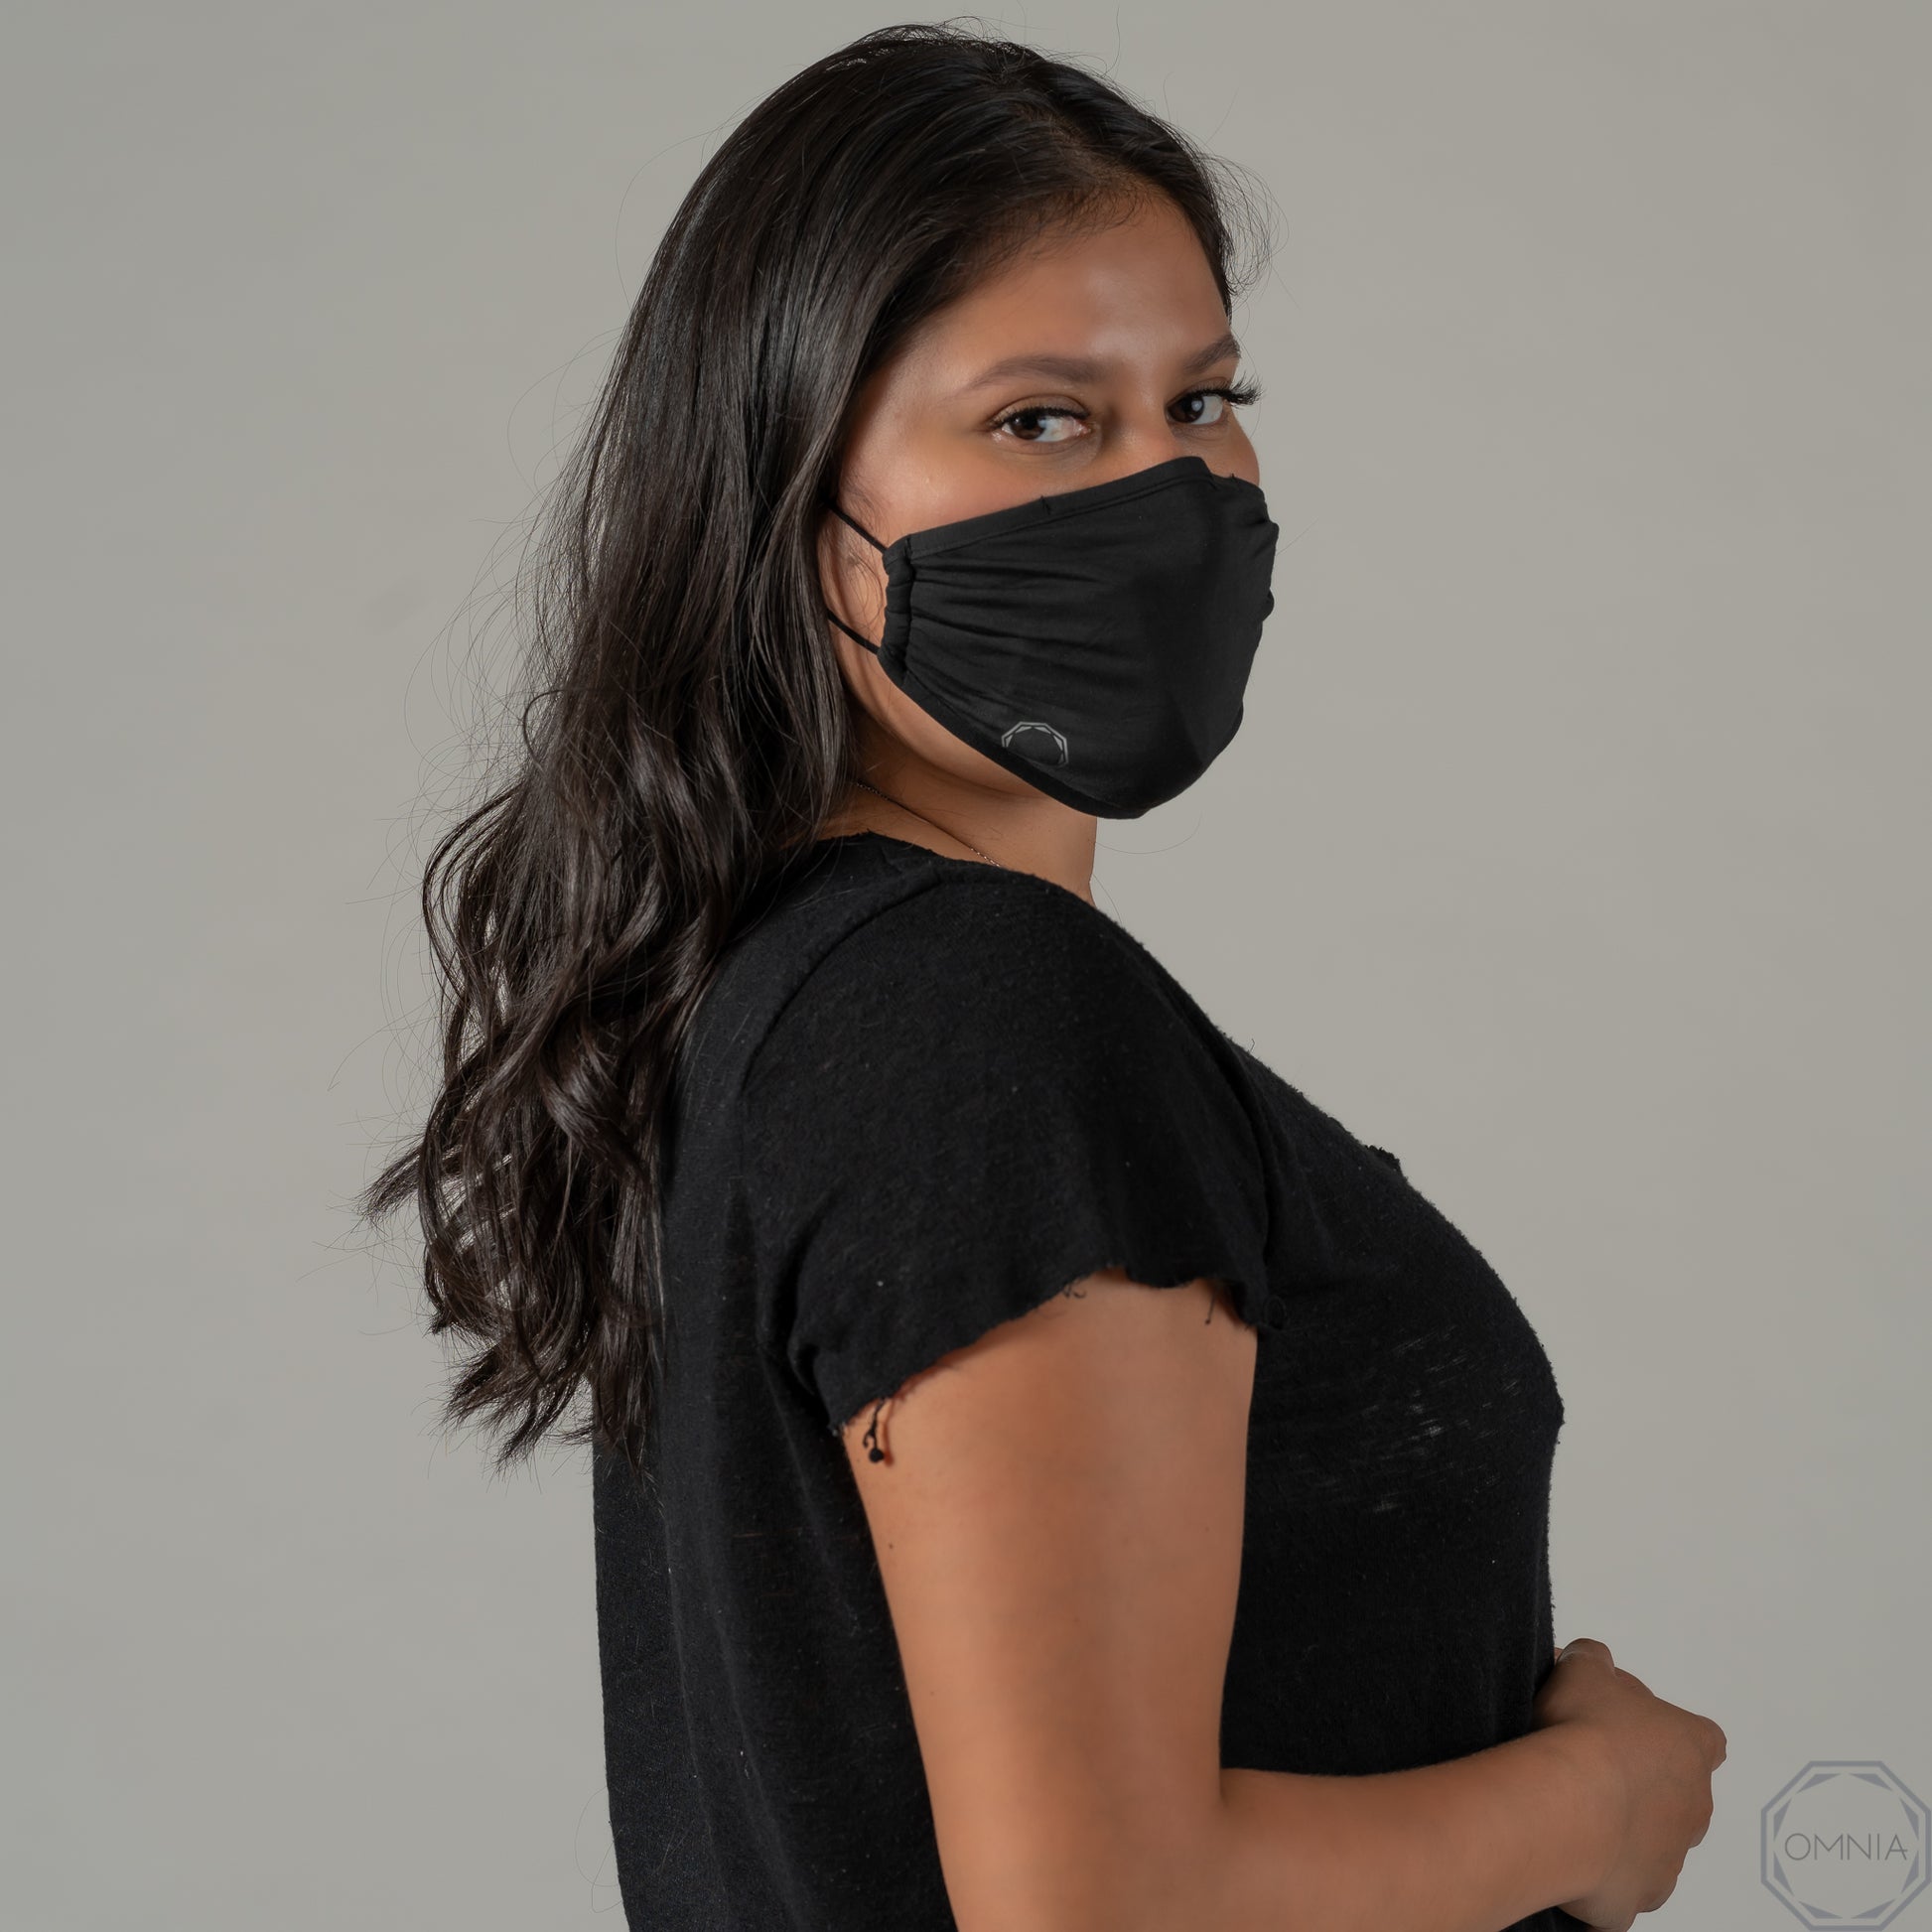 EarLoop Antimicrobial Mask Set